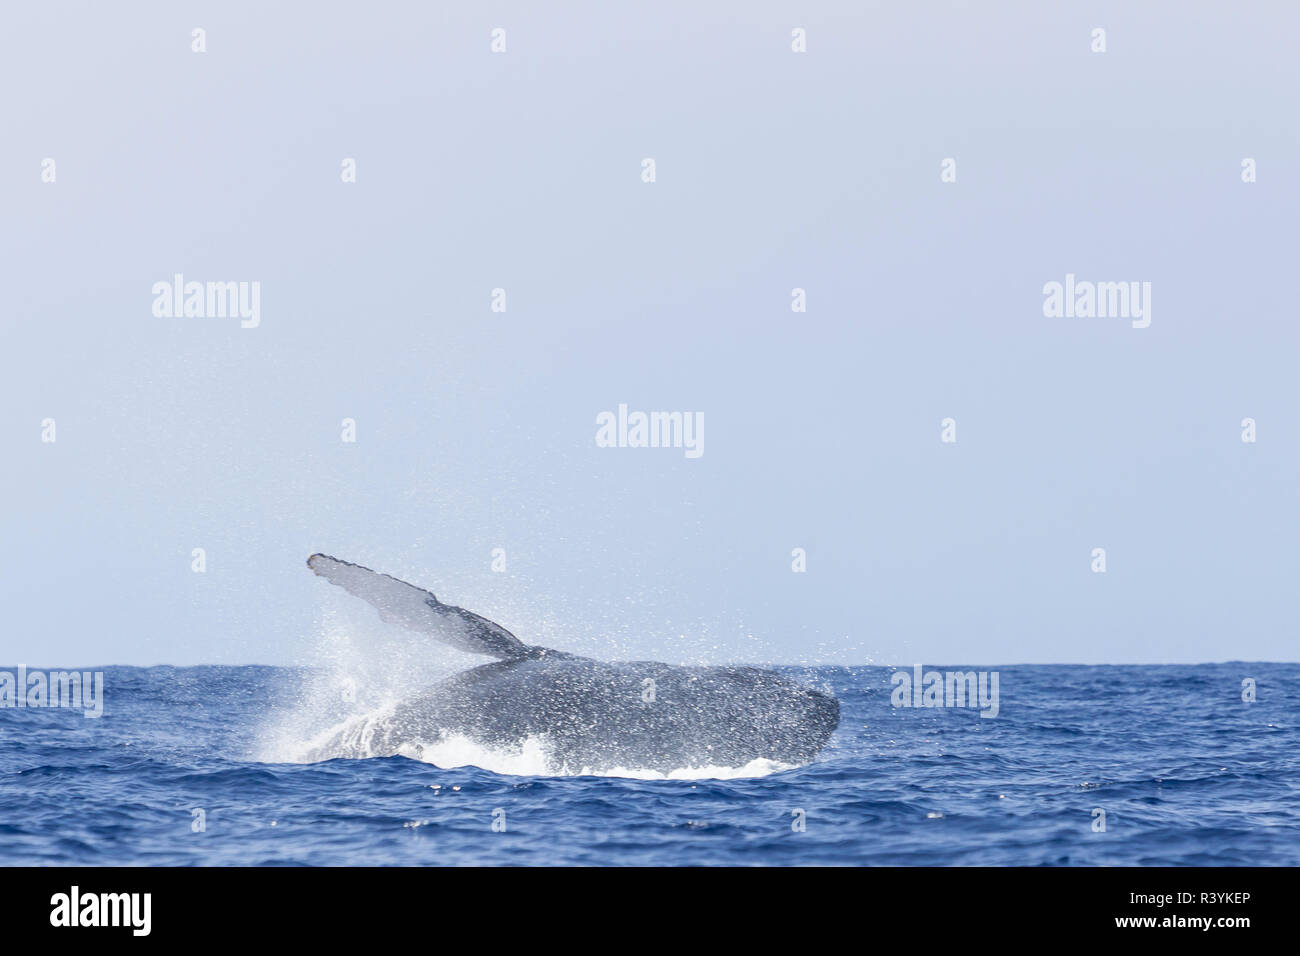 Les baleines à bosse (Megaptera novaeangliae), près de Kona, Big Island, Hawaii Banque D'Images